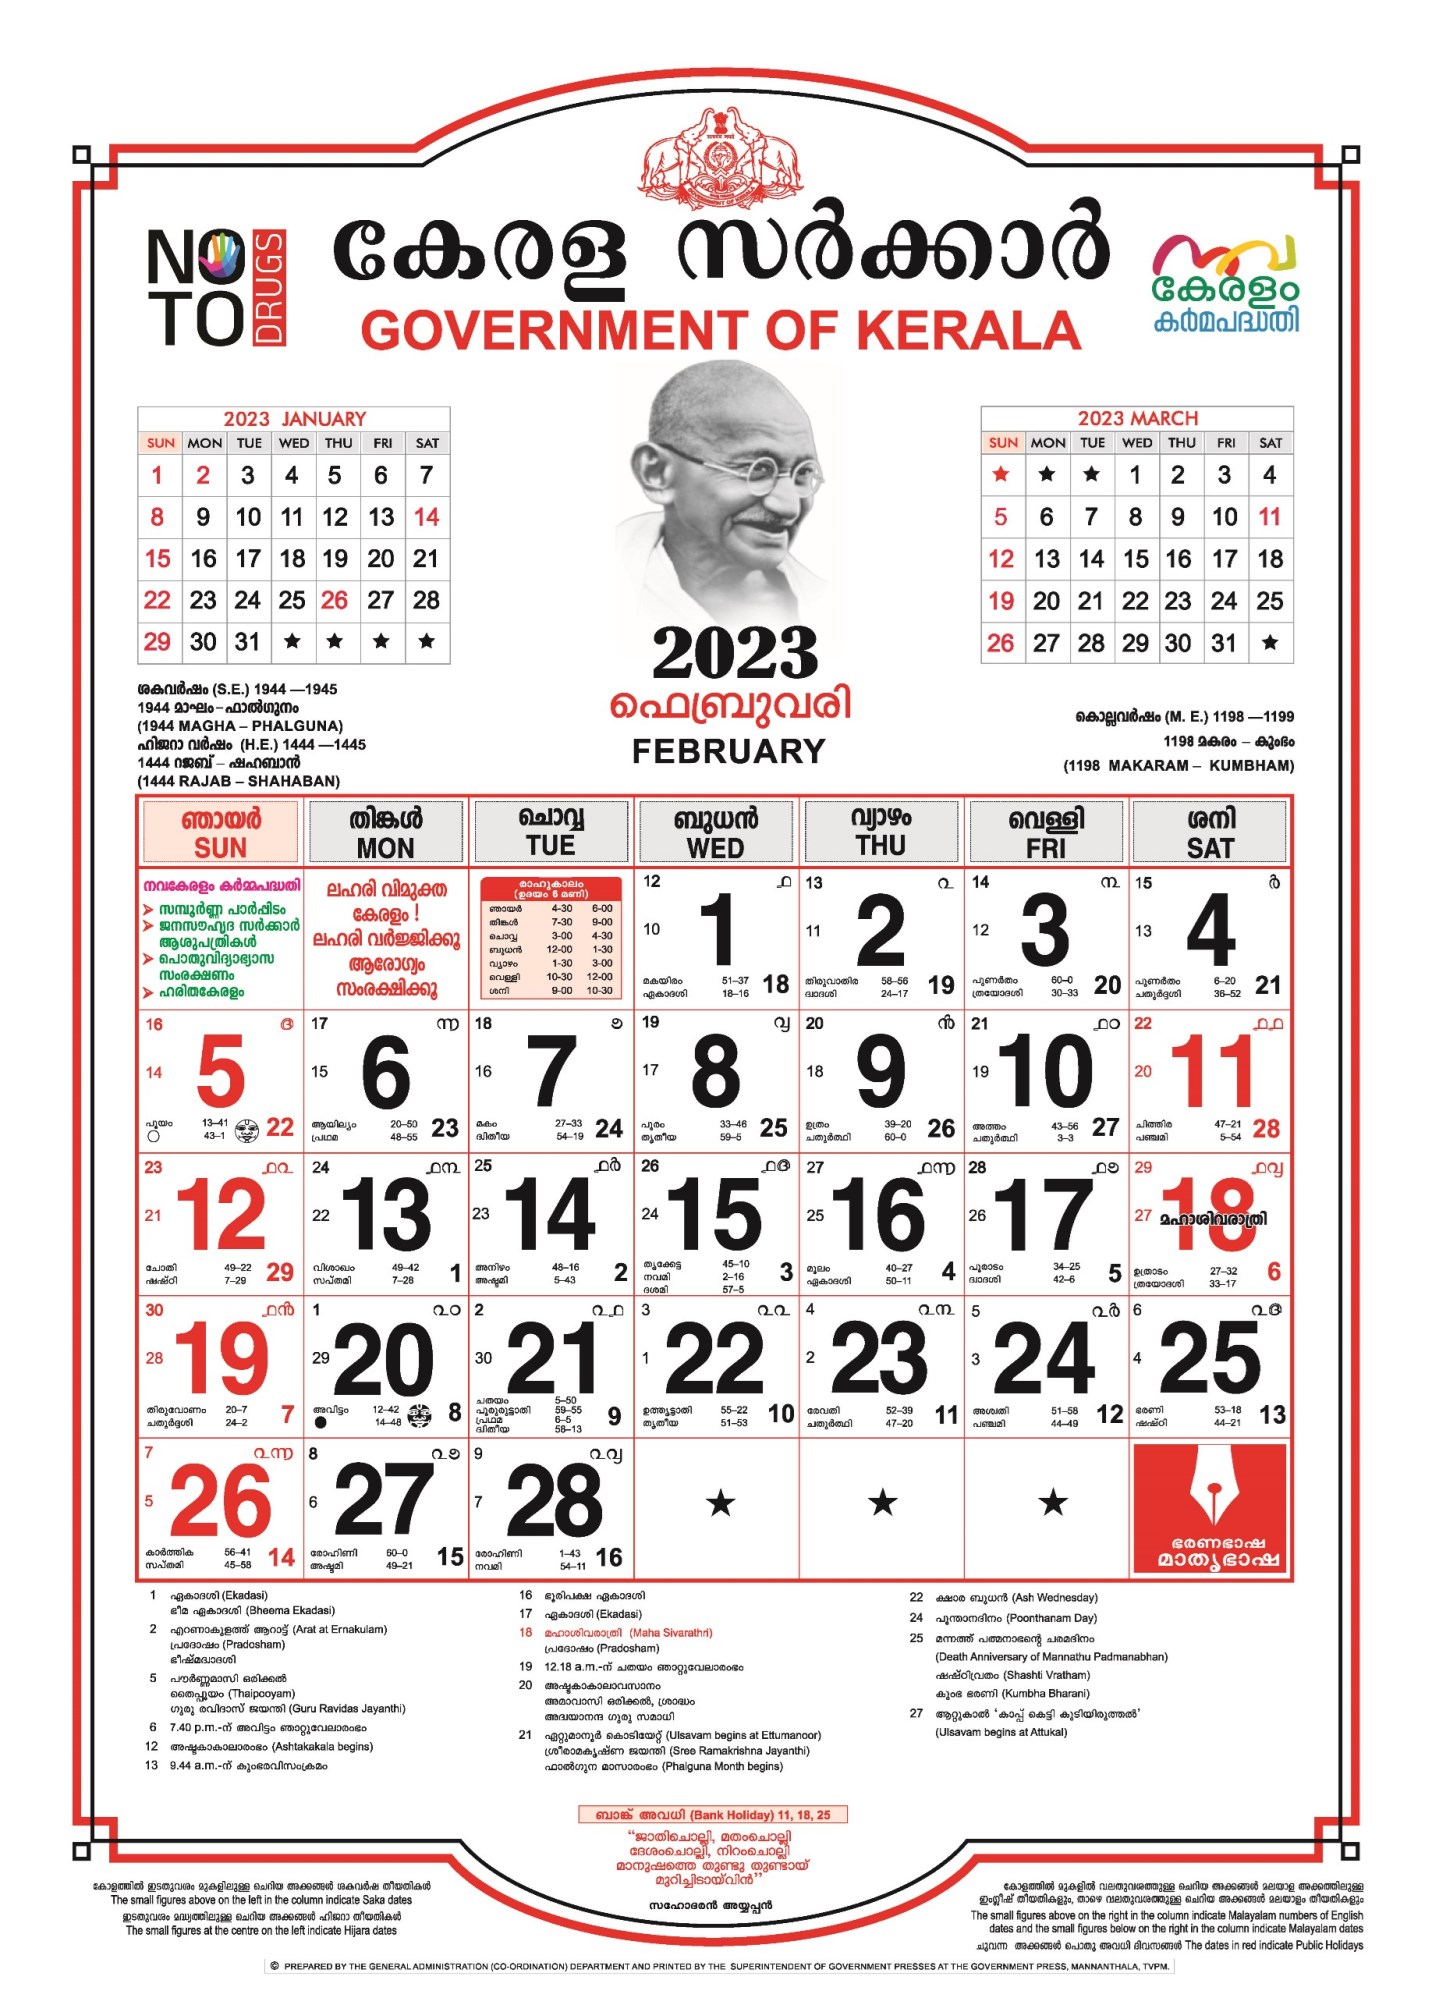 Kerala Government Calendar 2023 Pdf Kerala Govt Holidays And Festivals